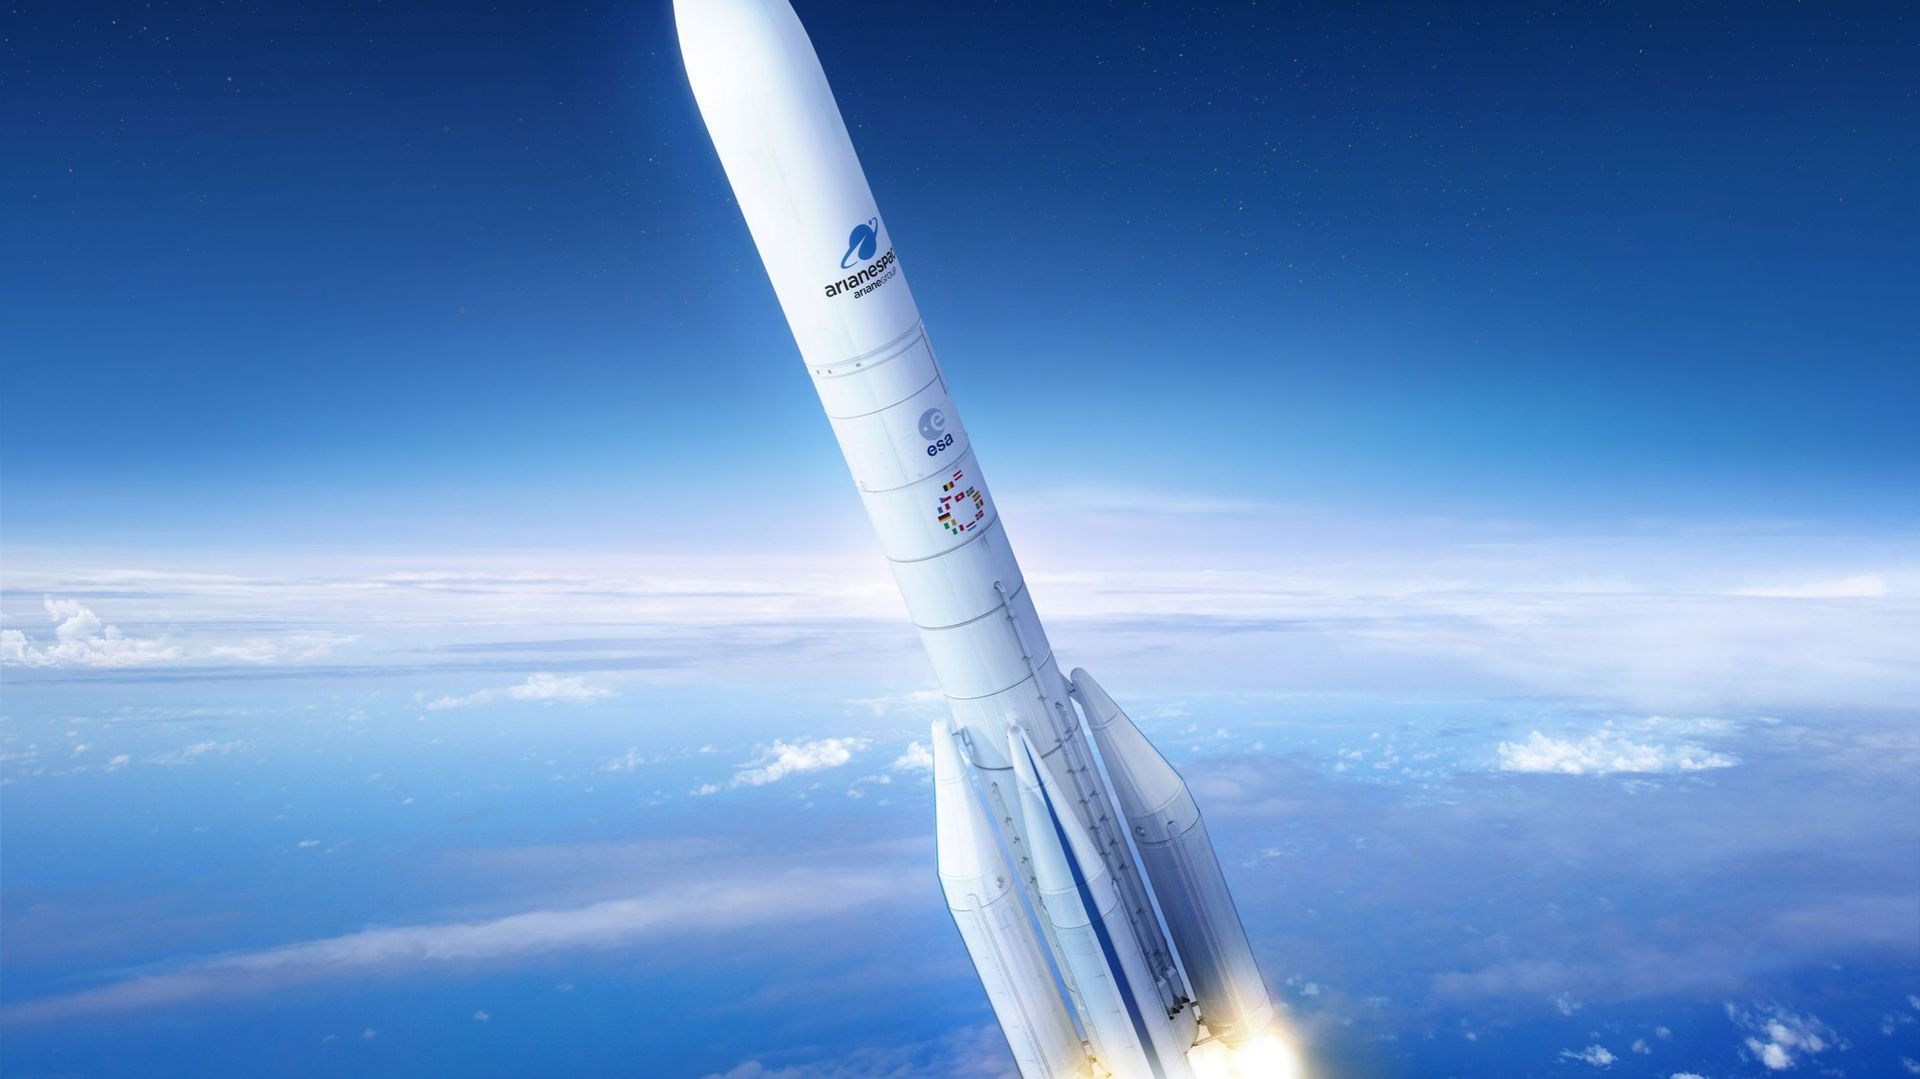 Pas encore de date de lancement pour la nouvelle fusée européenne Ariane 6